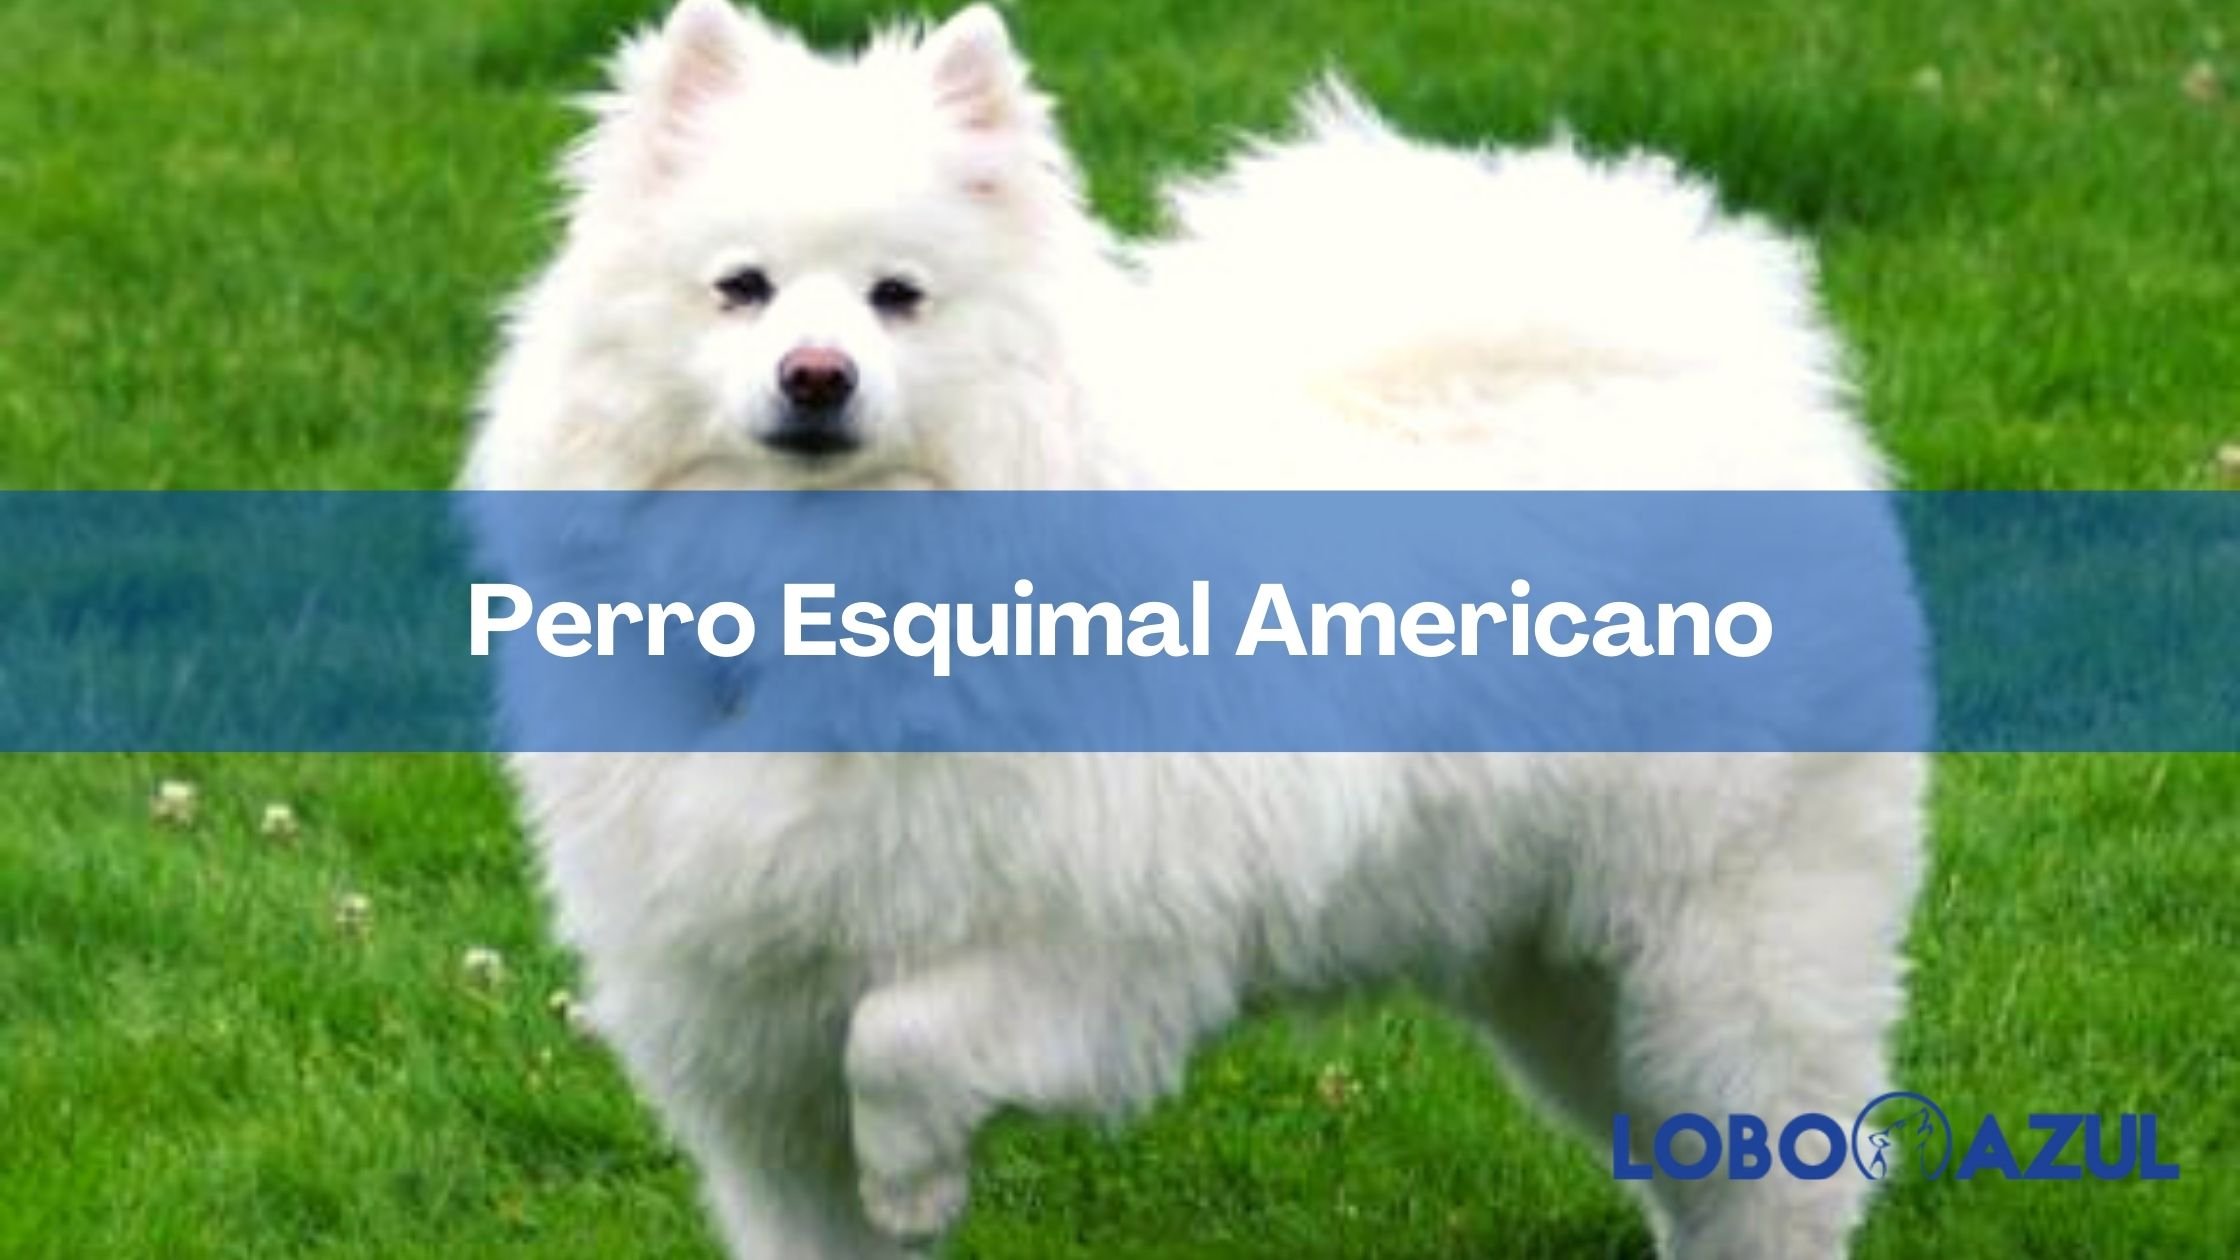 El Perro Esquimal Americano: un peludo amigo blanco